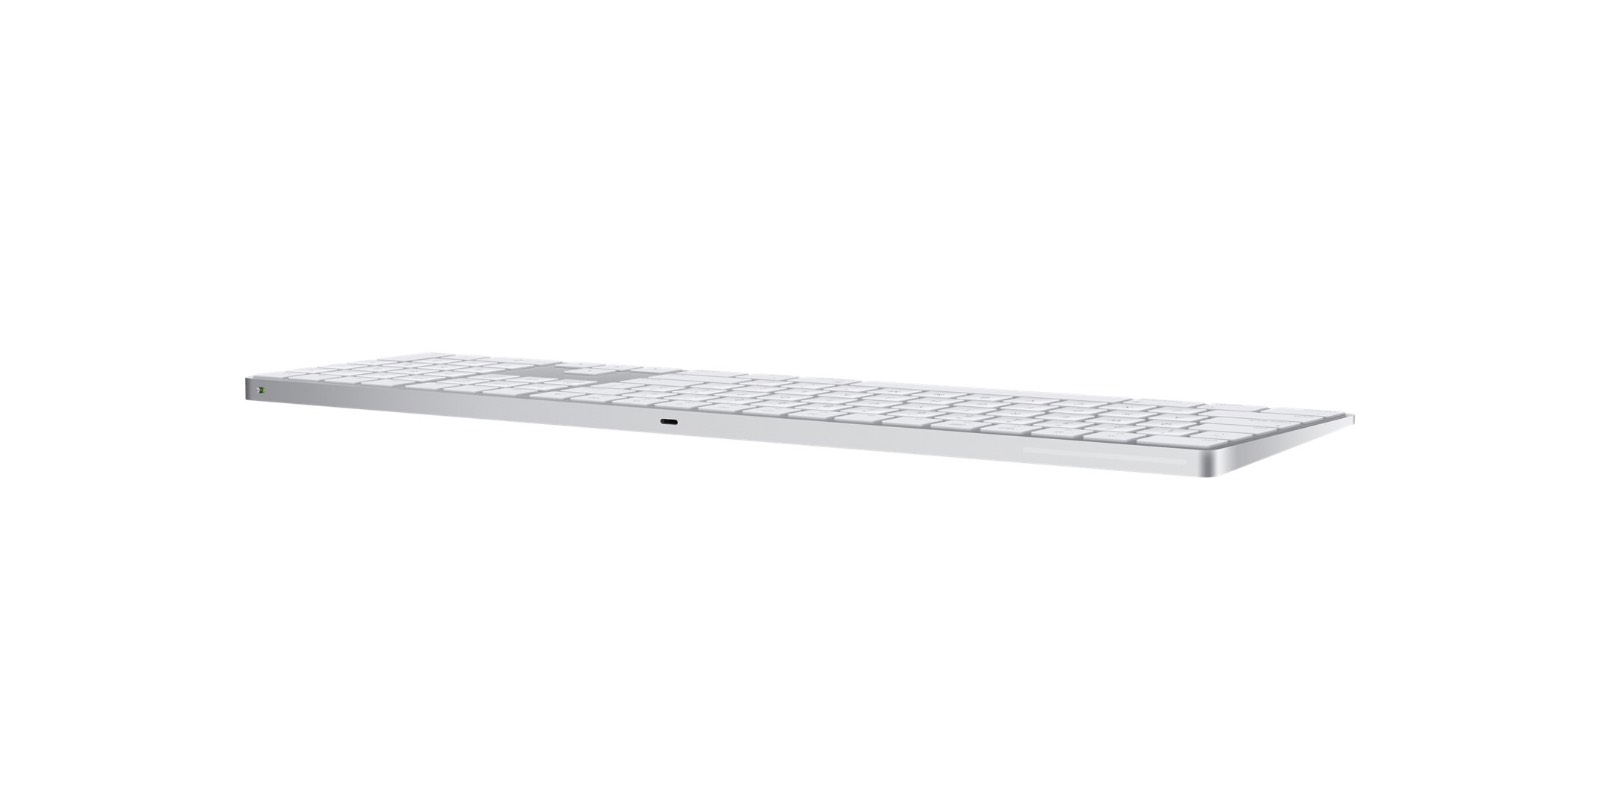 Imagen del nuevo teclado Apple Bluetooth con teclado numérico.